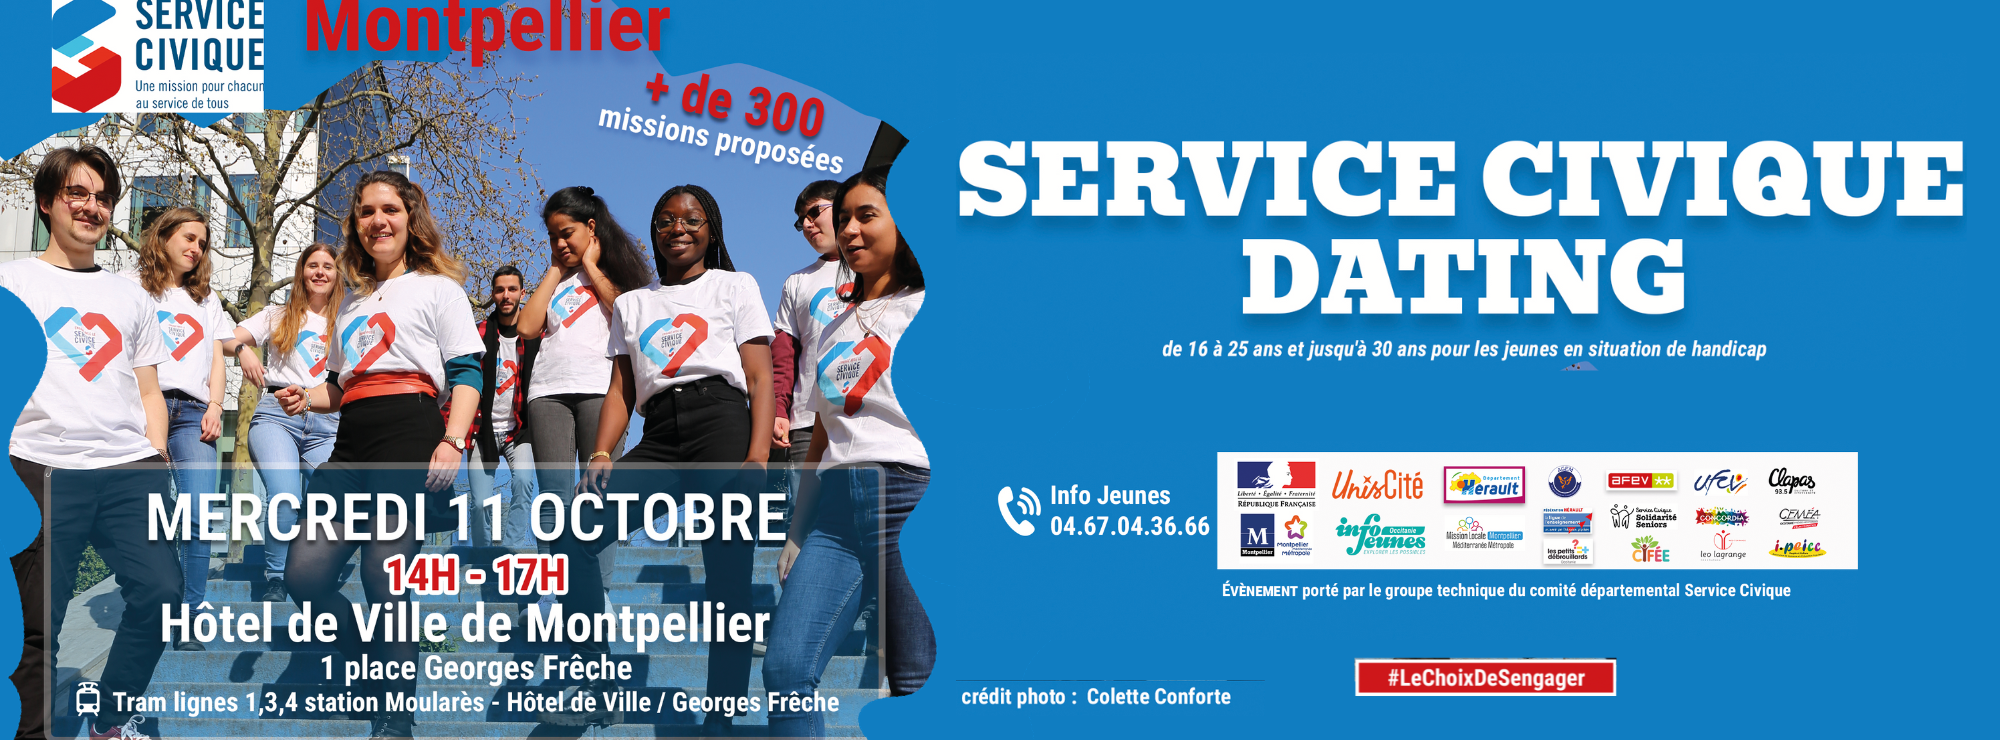 Bannière Service Civique 11 Octobre (2000 x 740).png